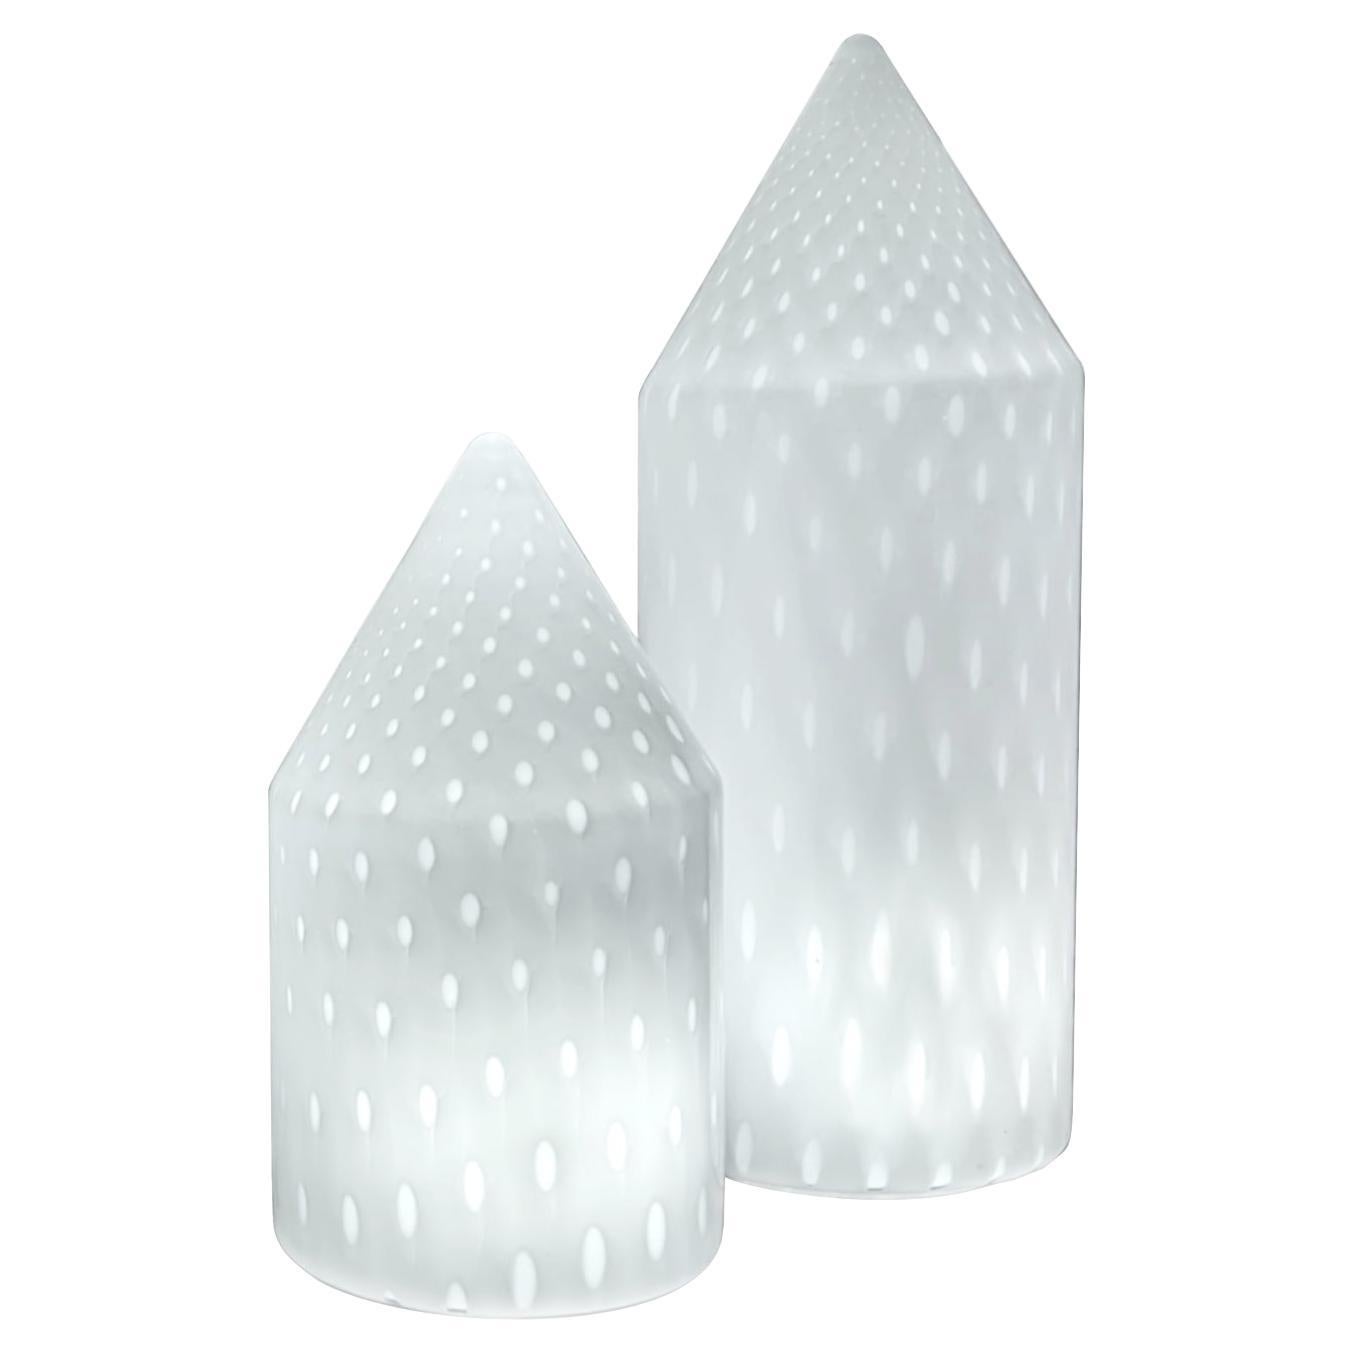 Pair of Murano glass table lamps by Vetri Murano